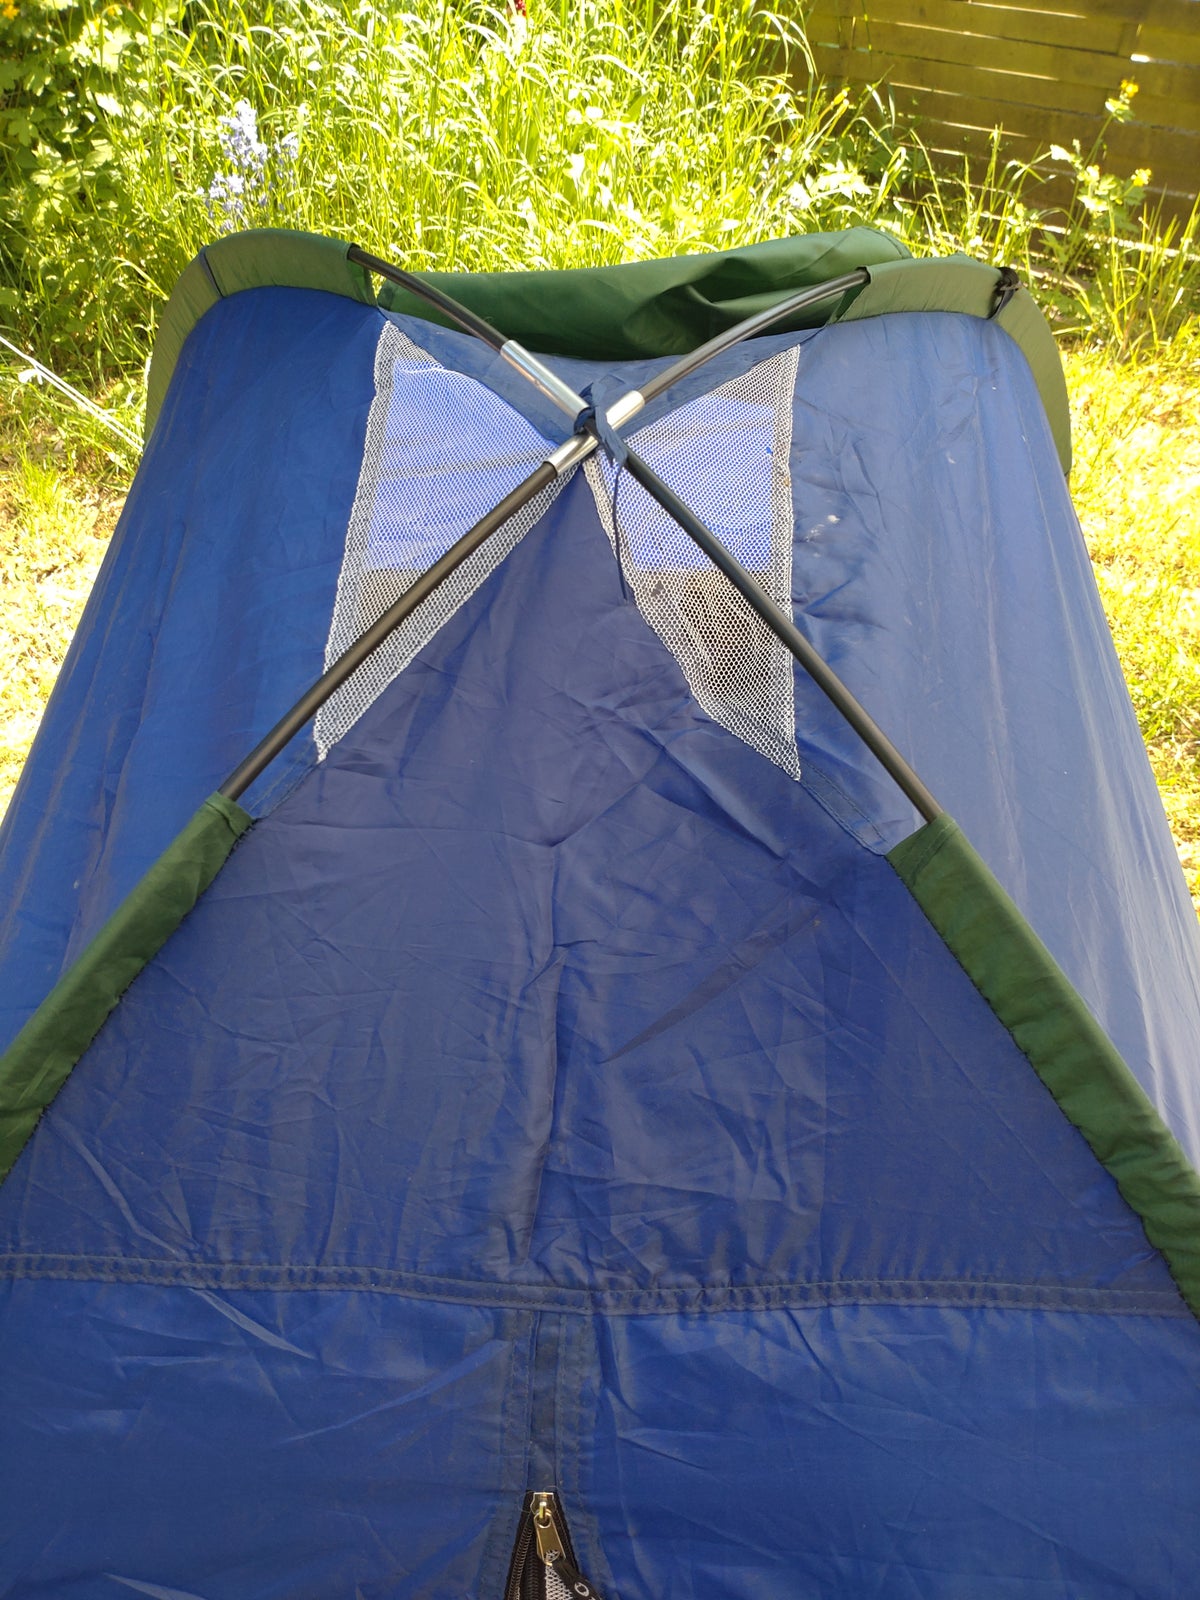 Gratis 2 personers letvægt kuppel telt med mygg...